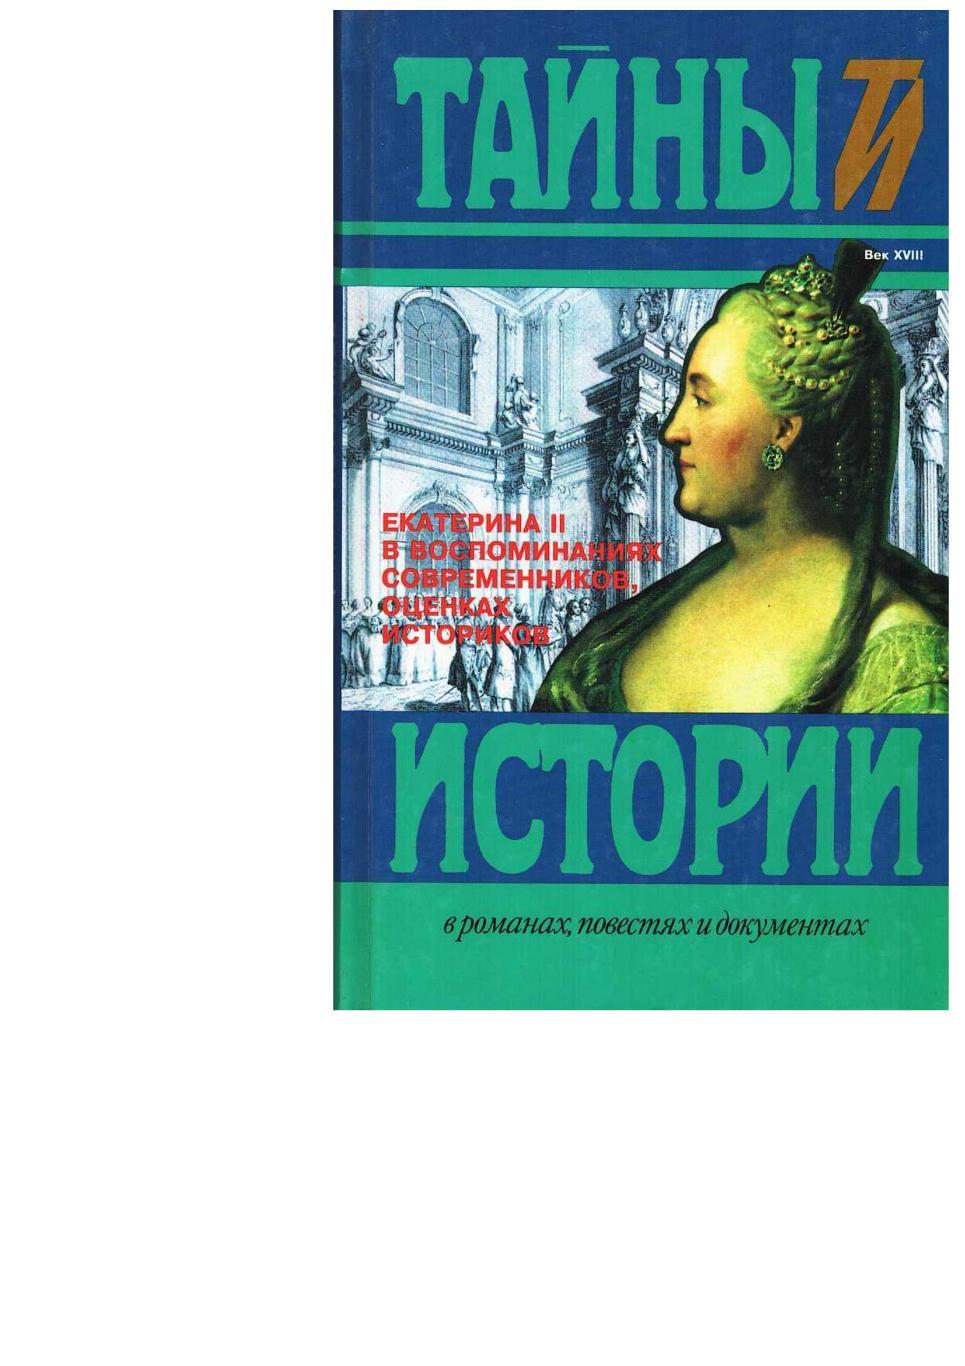 Екатерина II в воспоминаниях современников, оценках историков. – М., 1998.